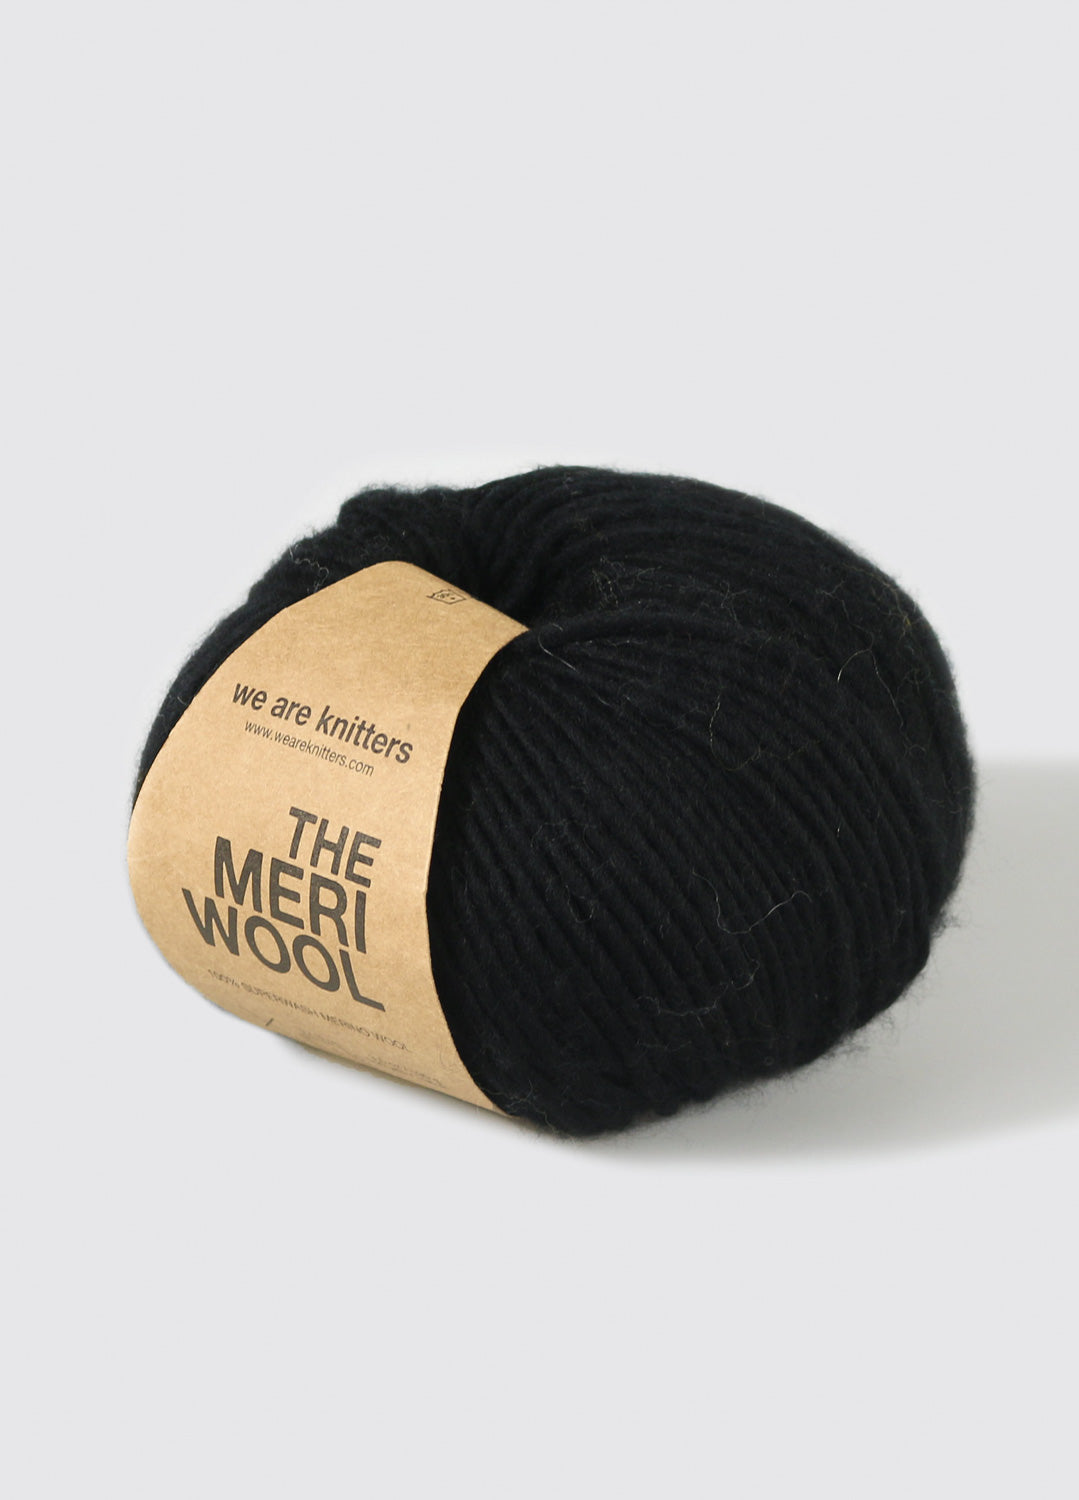 Merino – weareknitters